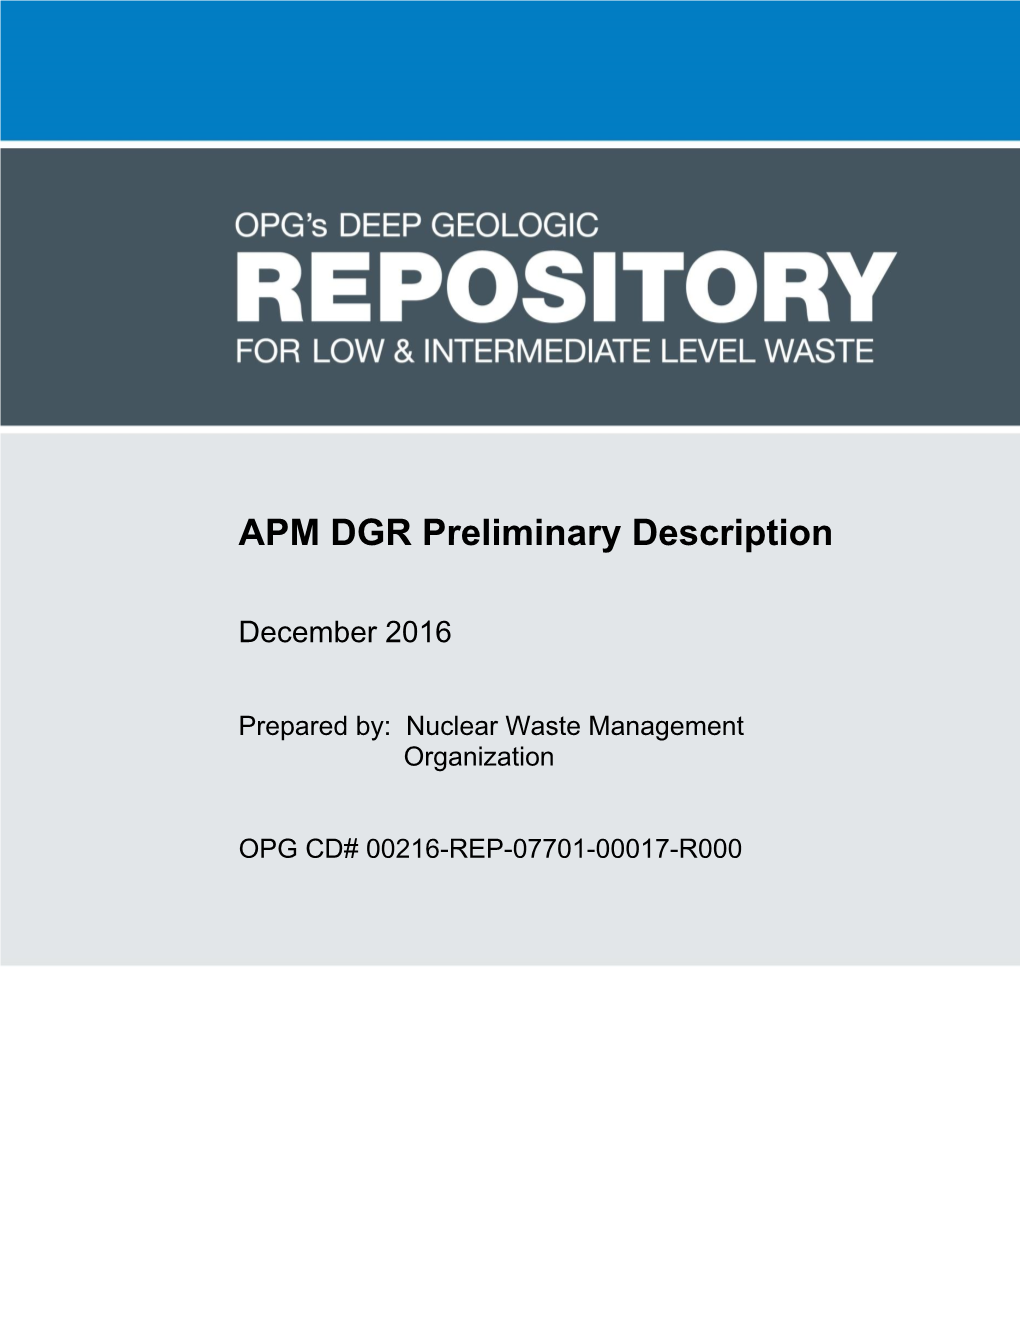 APM DGR Preliminary Description